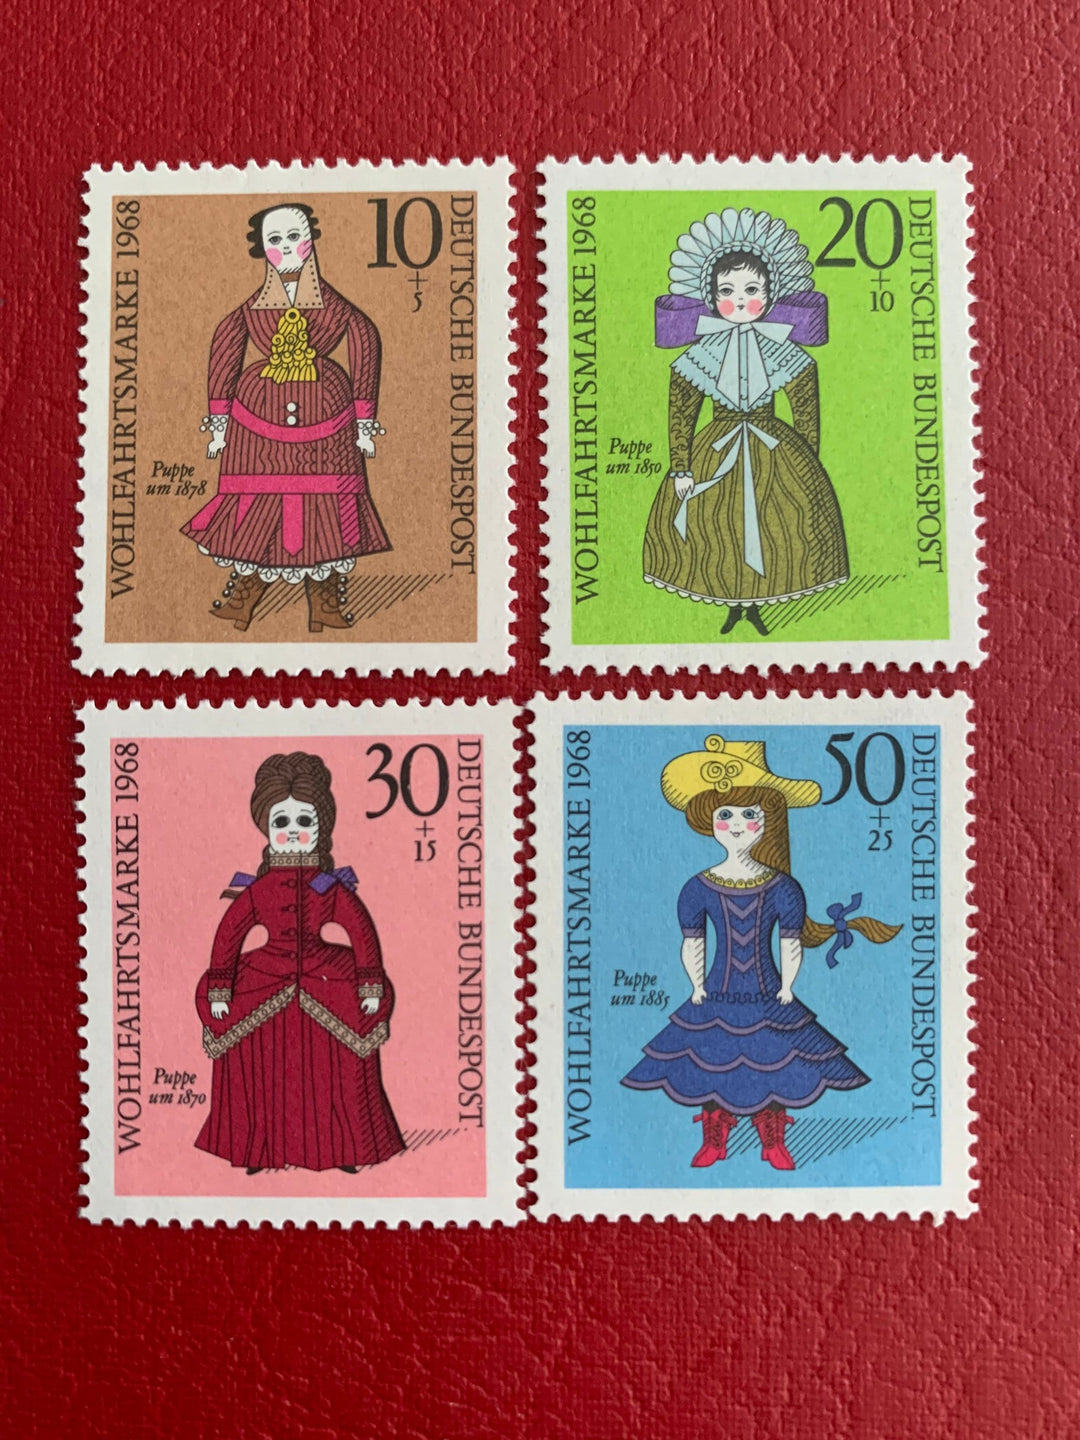 West Germany- Original Vintage Postage Stamps- Dolls - 1968